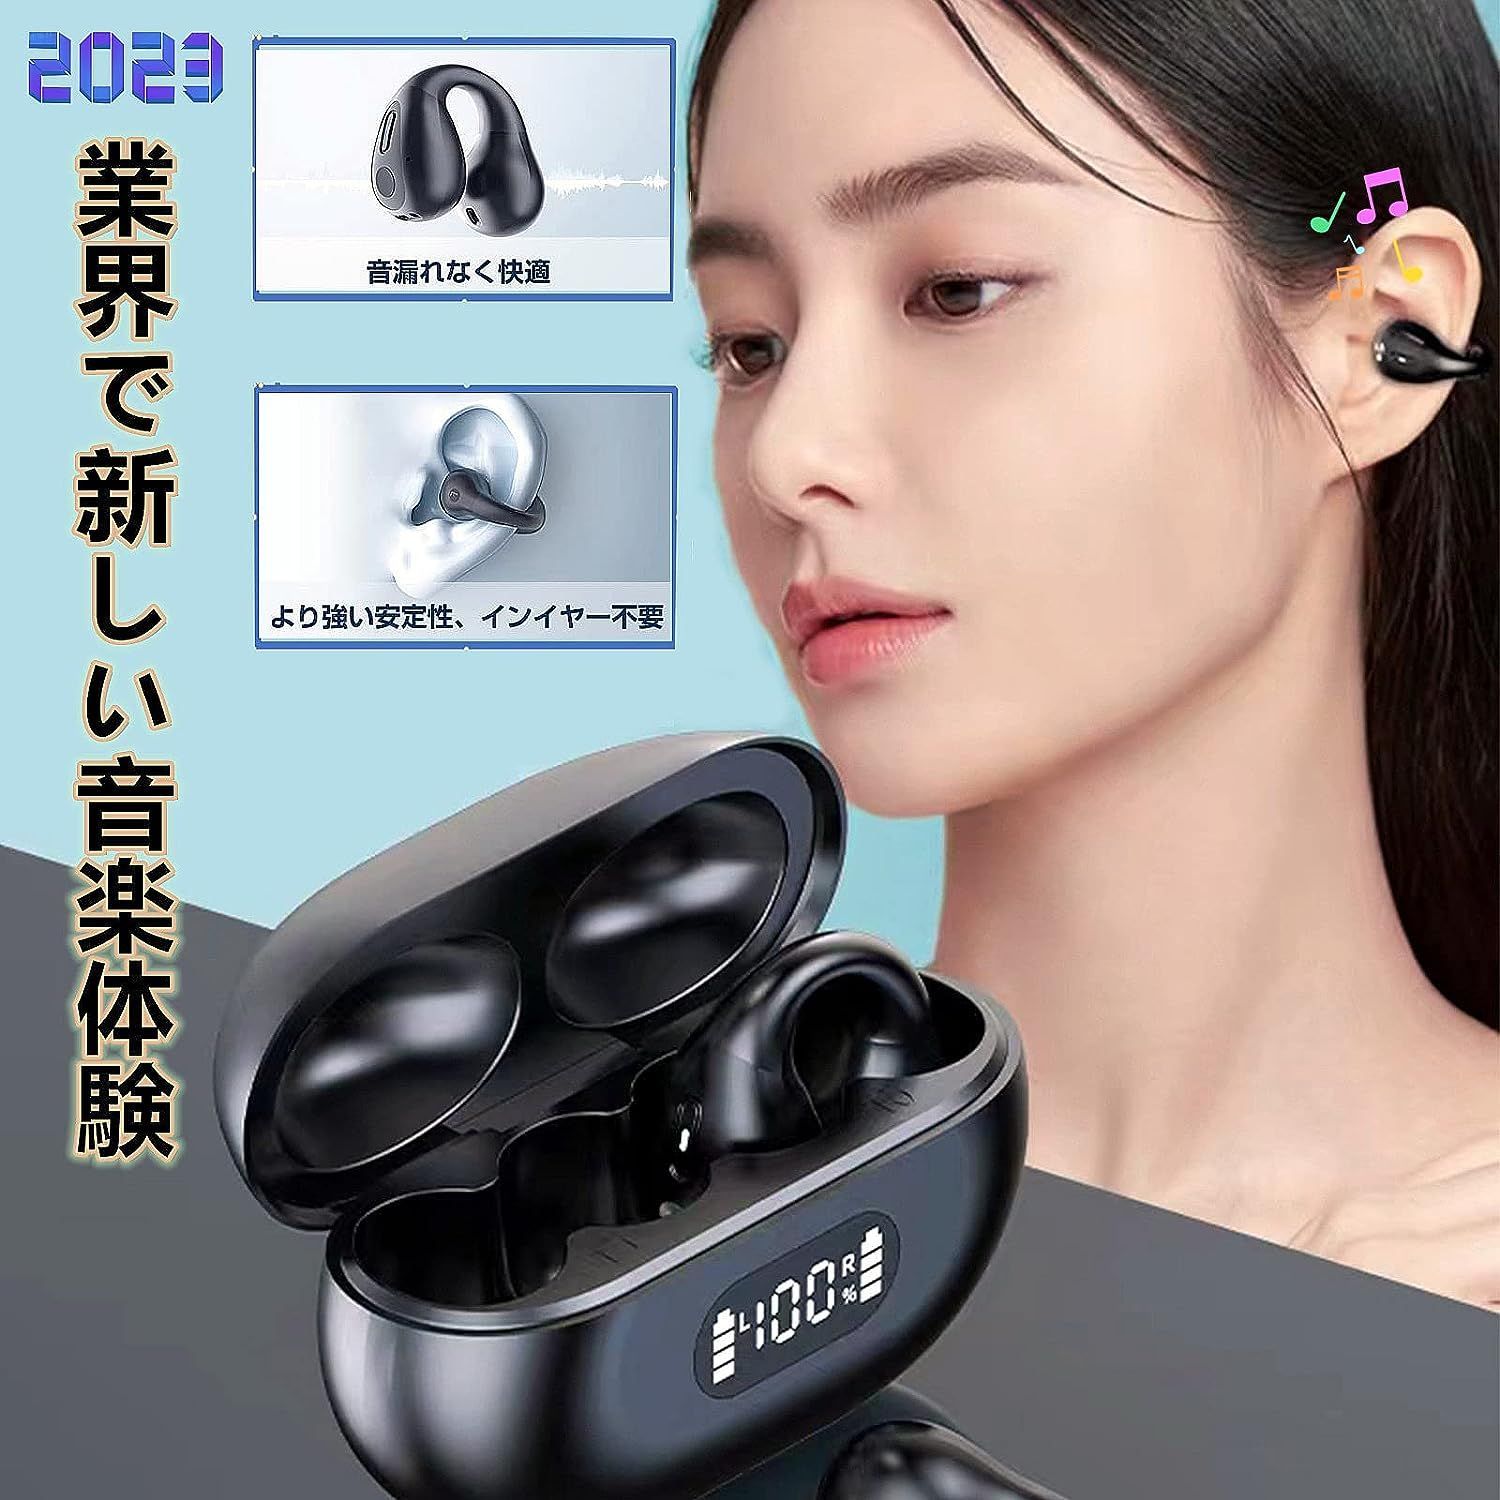 限定特価 ワイヤレスイヤホン Bluetooth イヤホン 片耳/両耳 左右分離型 音量調整 小型/軽量 VD-G01 2833  レインボーショップ メルカリ